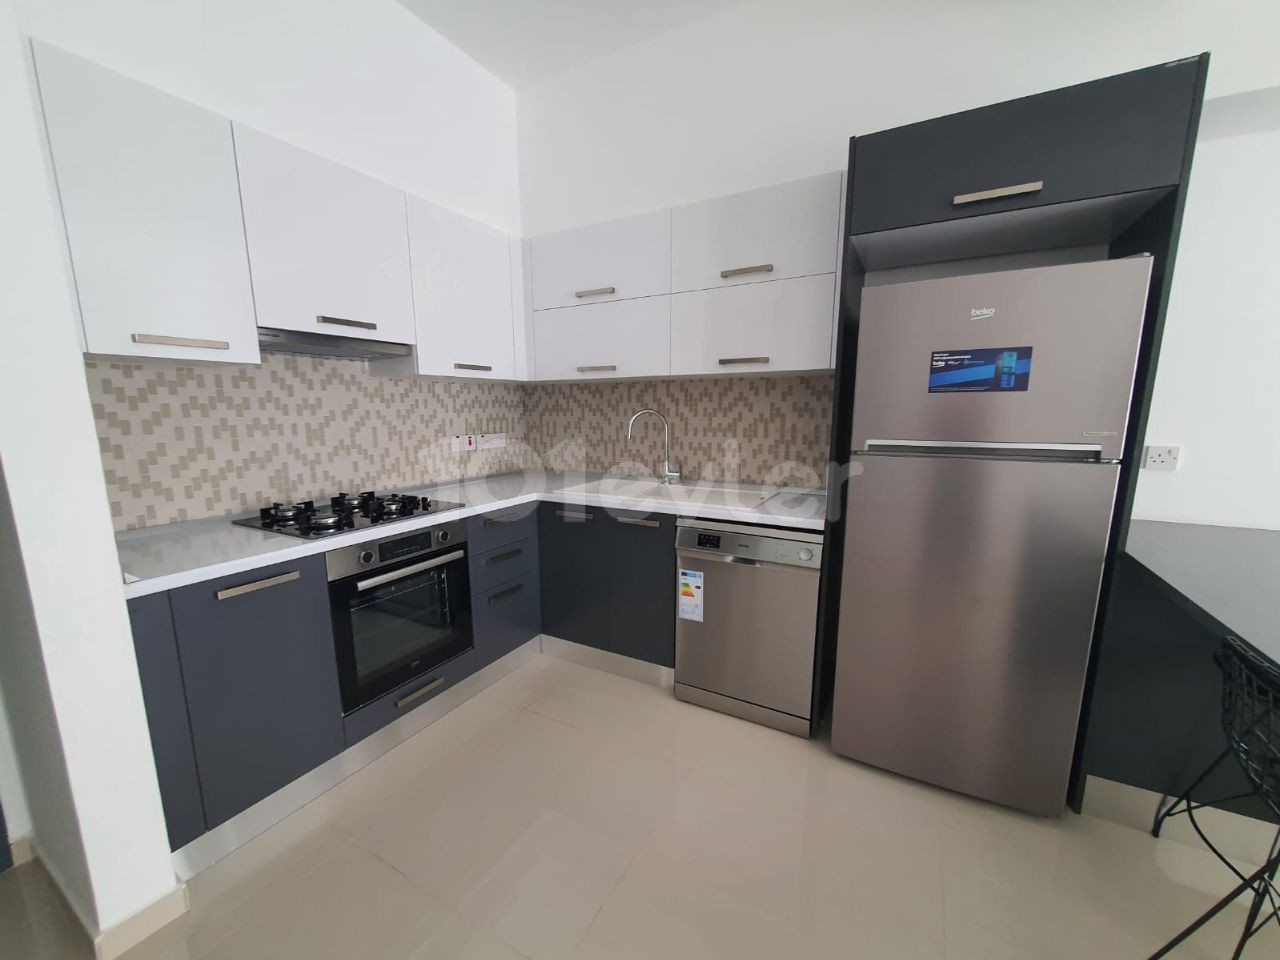 آپارتمان جدید در یک سایت مبله 2+1 برای فروش در قبرس نیکوزیا HAMİTKÖY، مستاجر آماده، فرصت سرمایه گذاری عالی!